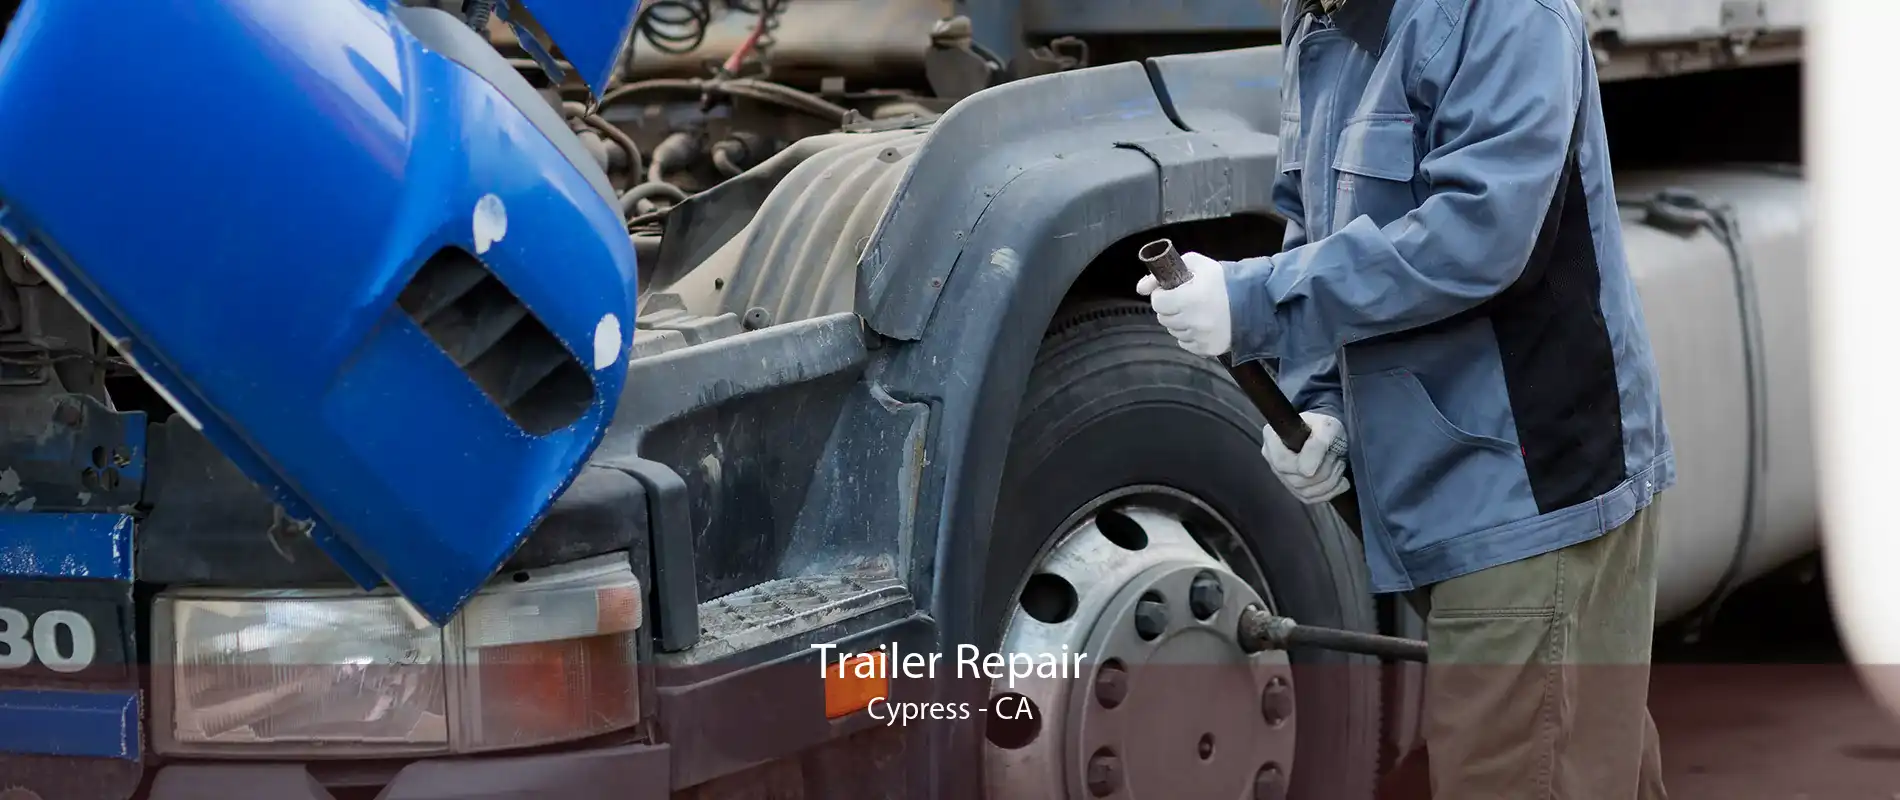 Trailer Repair Cypress - CA